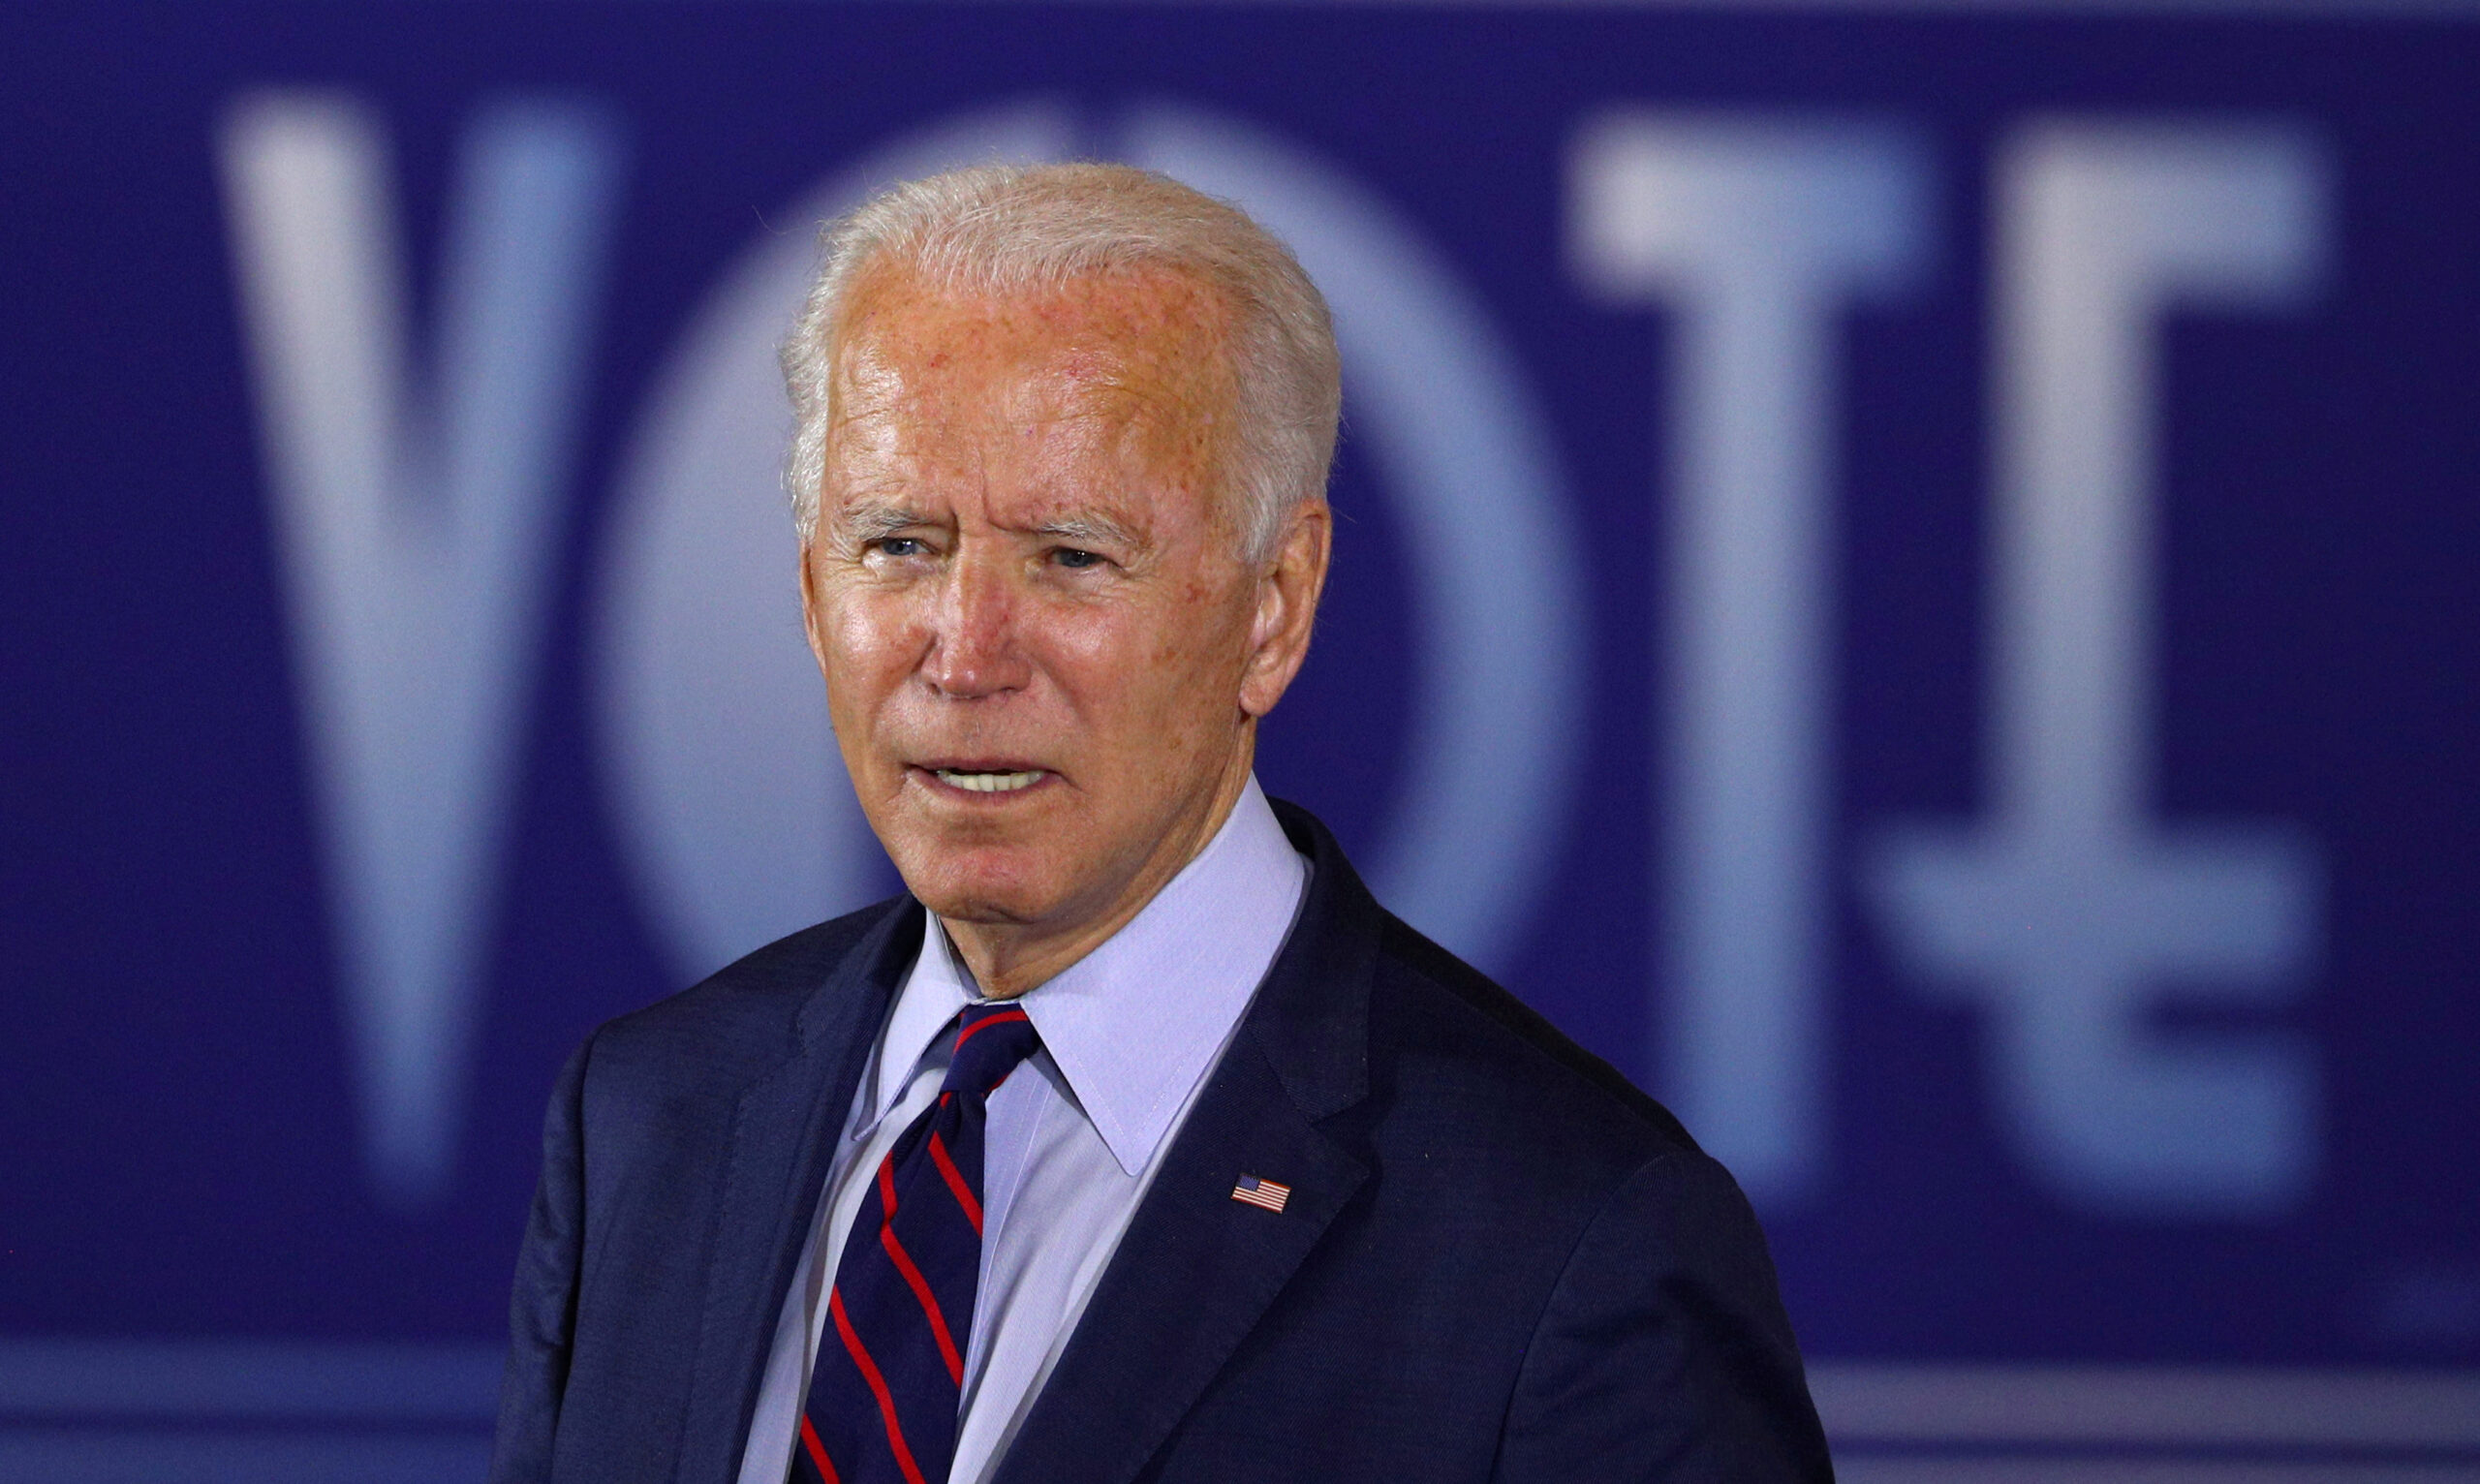 FOTO DE ARCHIVO: El candidato demócrata a la presidencia de Estados Unidos, Joe Biden, durante un acto de campaña en la Union Terminal de Cincinnati, estado de Ohio, EEUU, el 12 de octubre de 2020. REUTERS/Tom Brenner